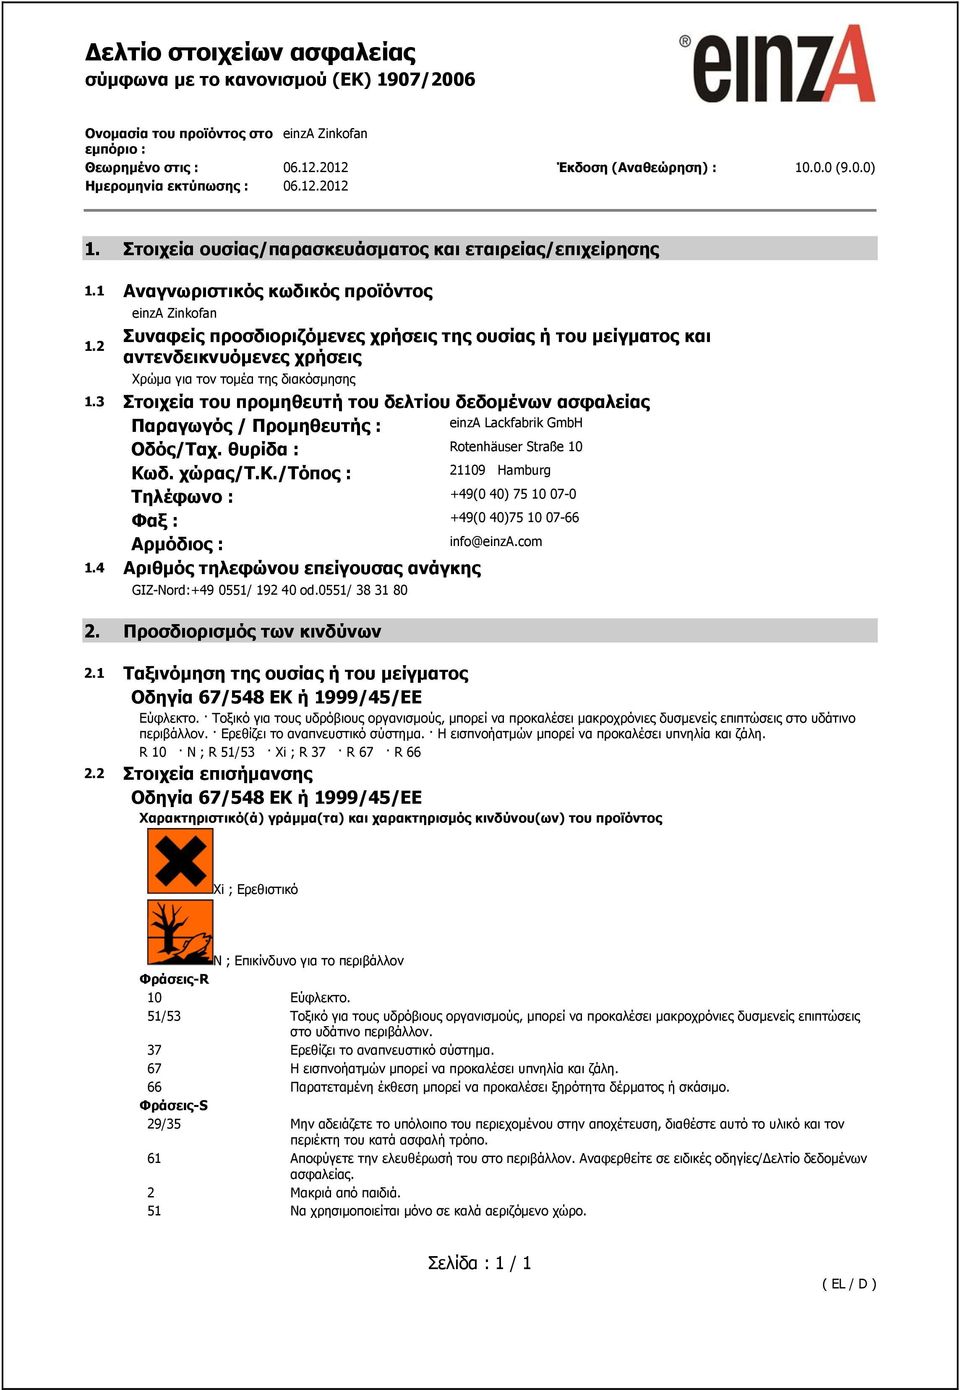 3 Στοιχεία του προμηθευτή του δελτίου δεδομένων ασφαλείας Παραγωγός / Προμηθευτής : einza Lackfabrik GmbH Οδός/Ταχ. θυρίδα : Rotenhäuser Straße 10 Κωδ. χώρας/τ.κ.